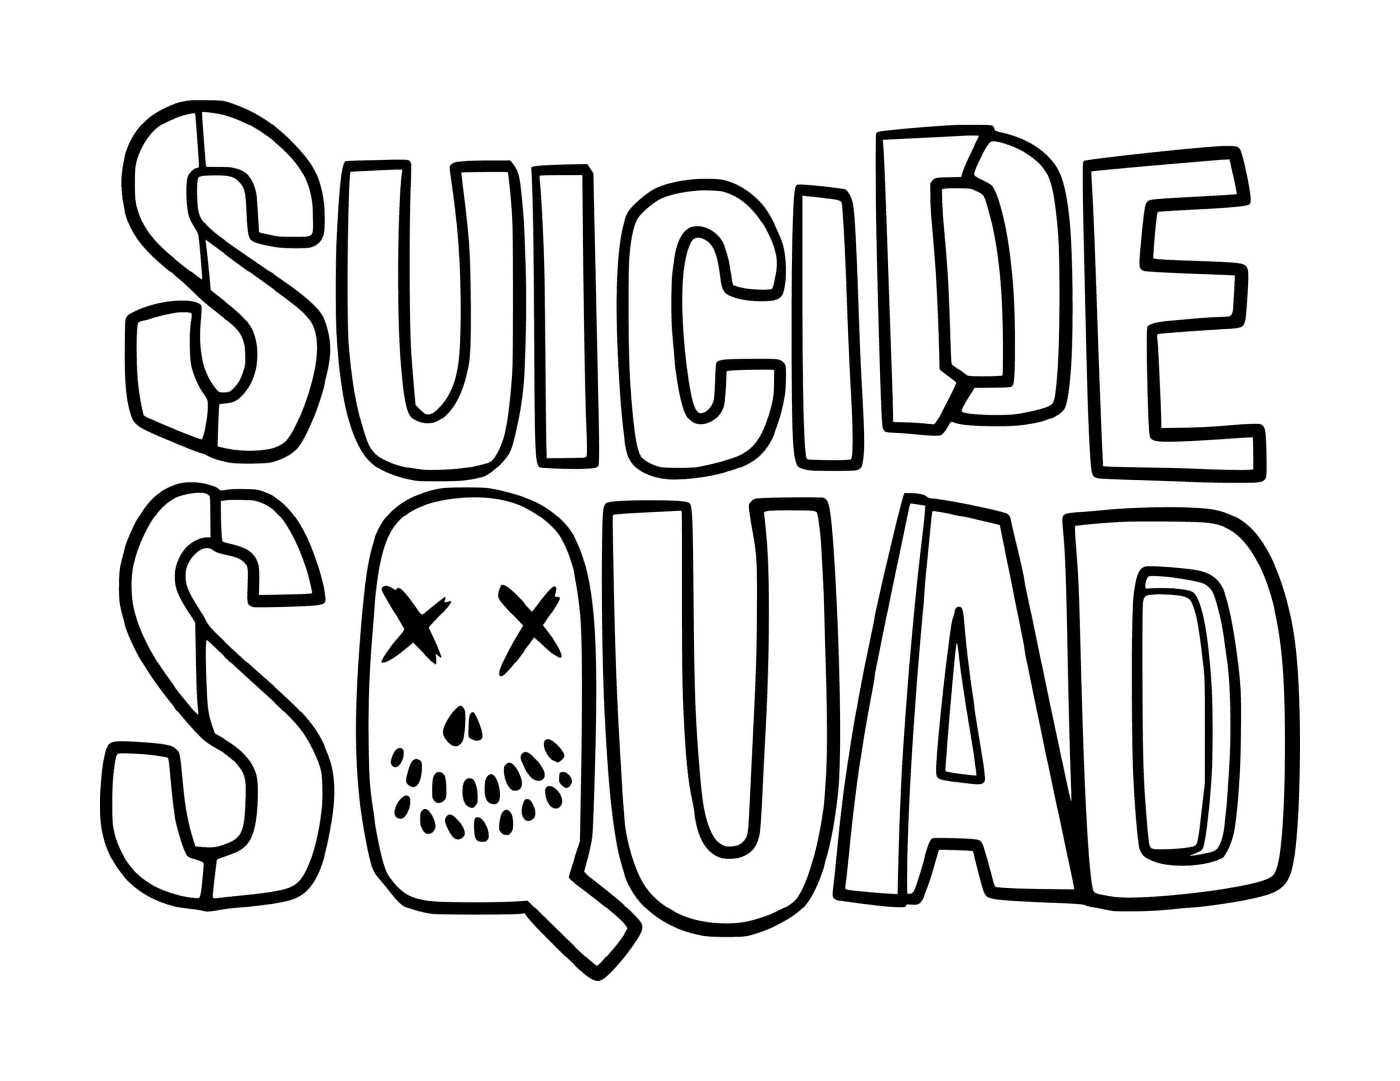  Die Worte Squad Selbstmord 